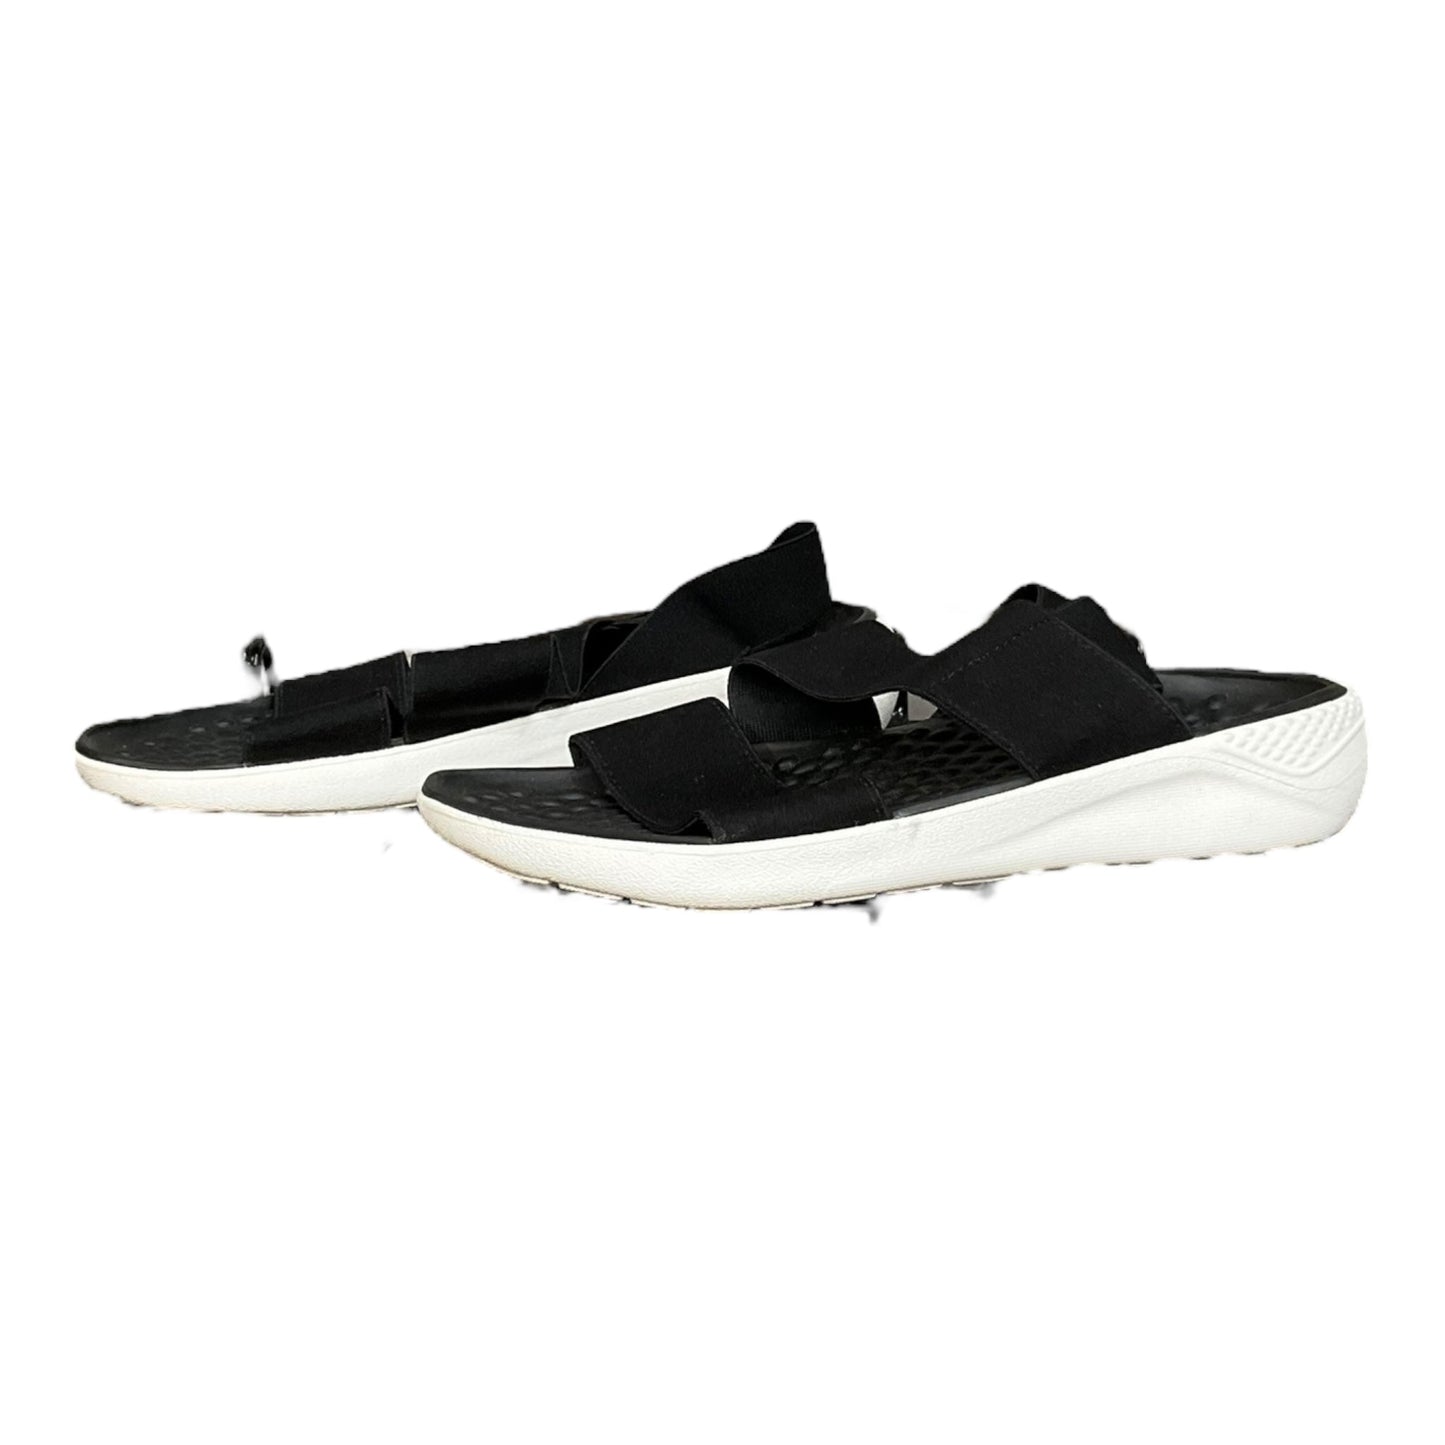 Black Sandals Flats Crocs, Size 7